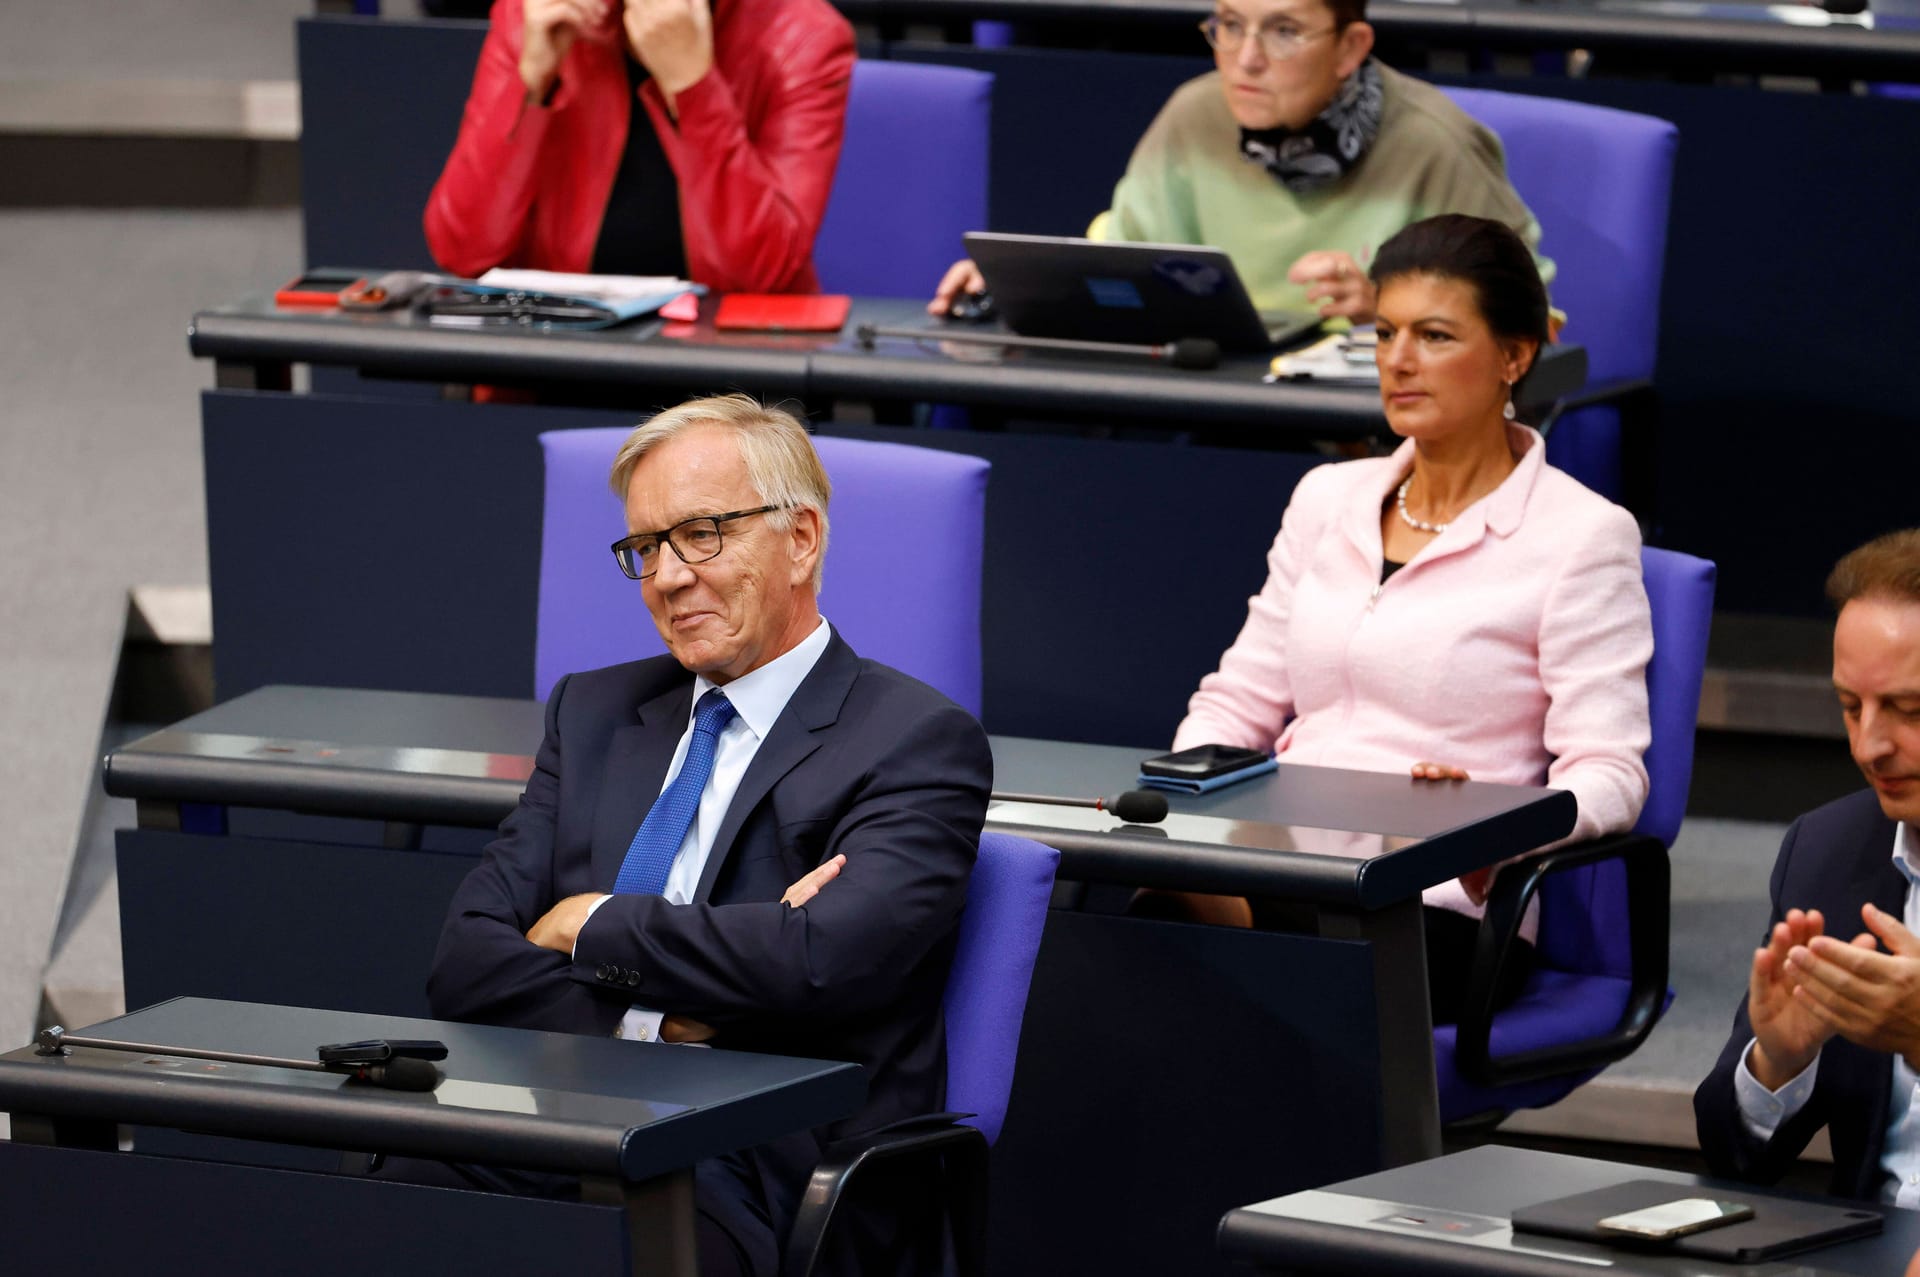 Dietmar Bartsch und Sahra Wagenknecht in der 51. Sitzung des Deutschen Bundestages: Die Linke versucht angesichts der geplanten Parteigründung von Wagenknecht wieder an Profil zu gewinnen.